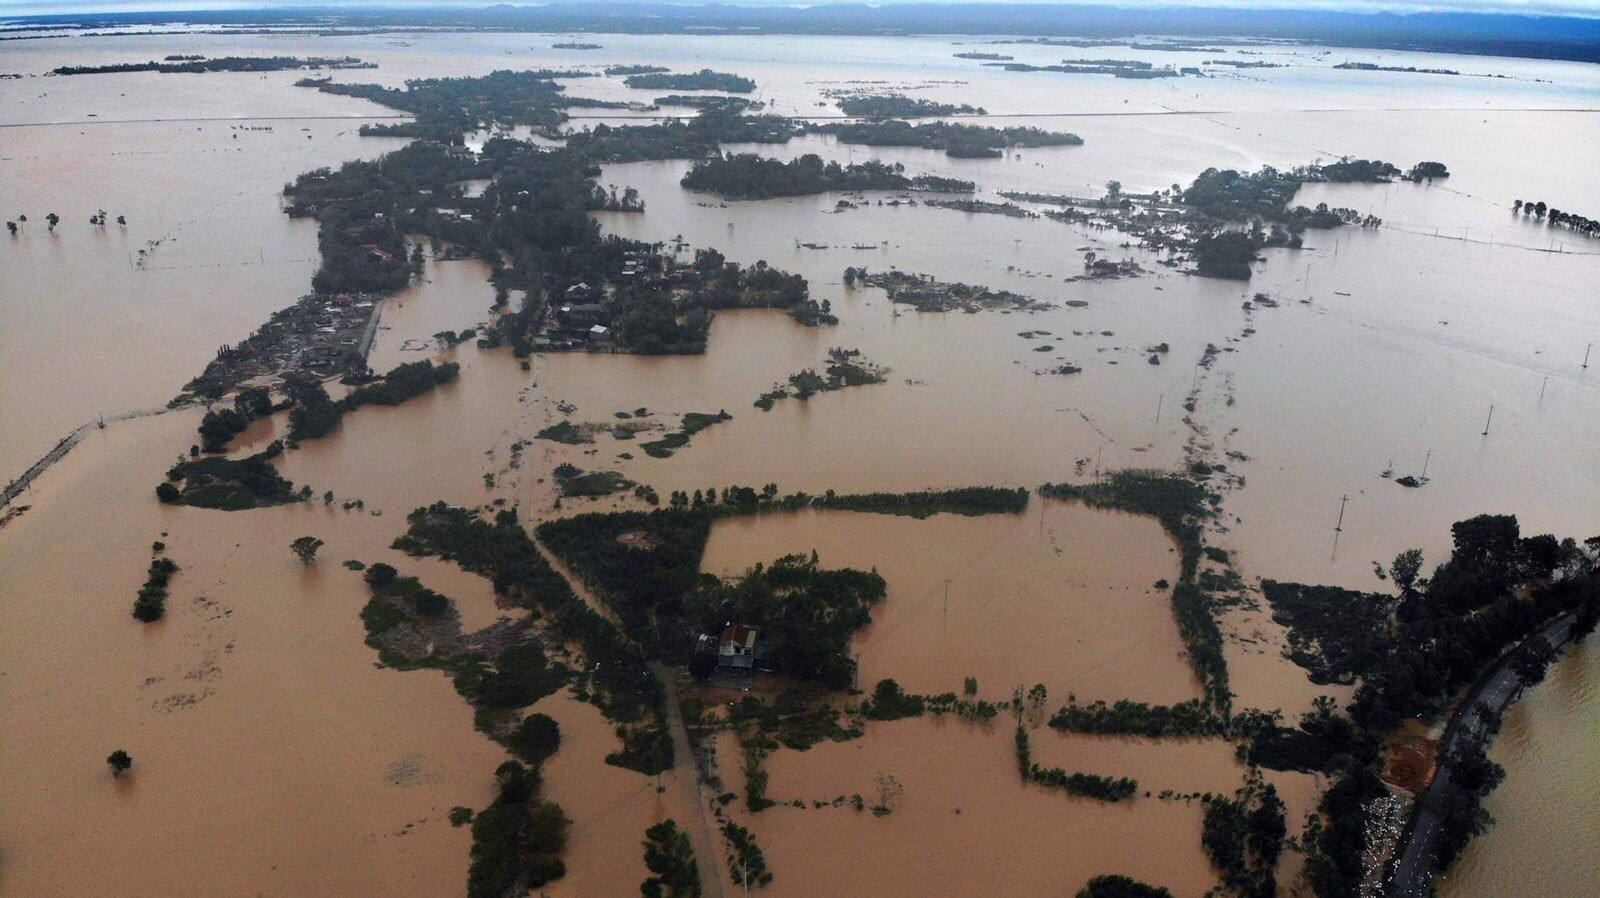 Cơn bão lũ gây nhiều thiệt hại về người và tài sản tại các tỉnh miền Trung